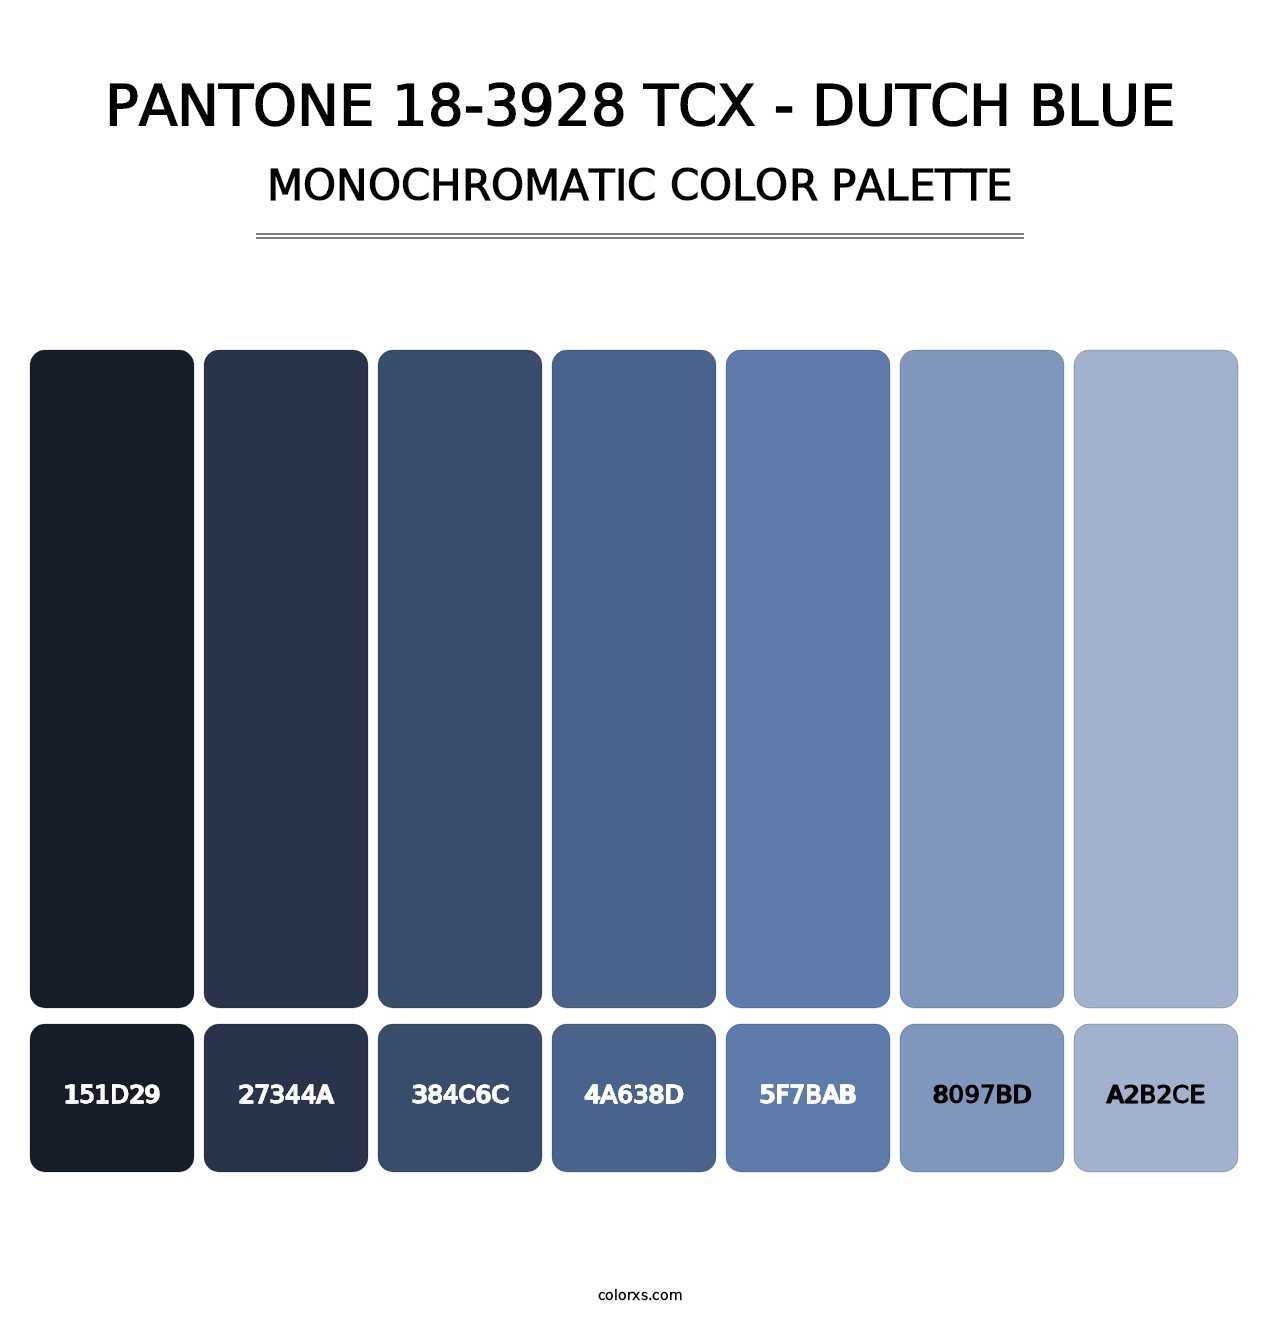 PANTONE 18-3928 TCX - Dutch Blue - Monochromatic Color Palette